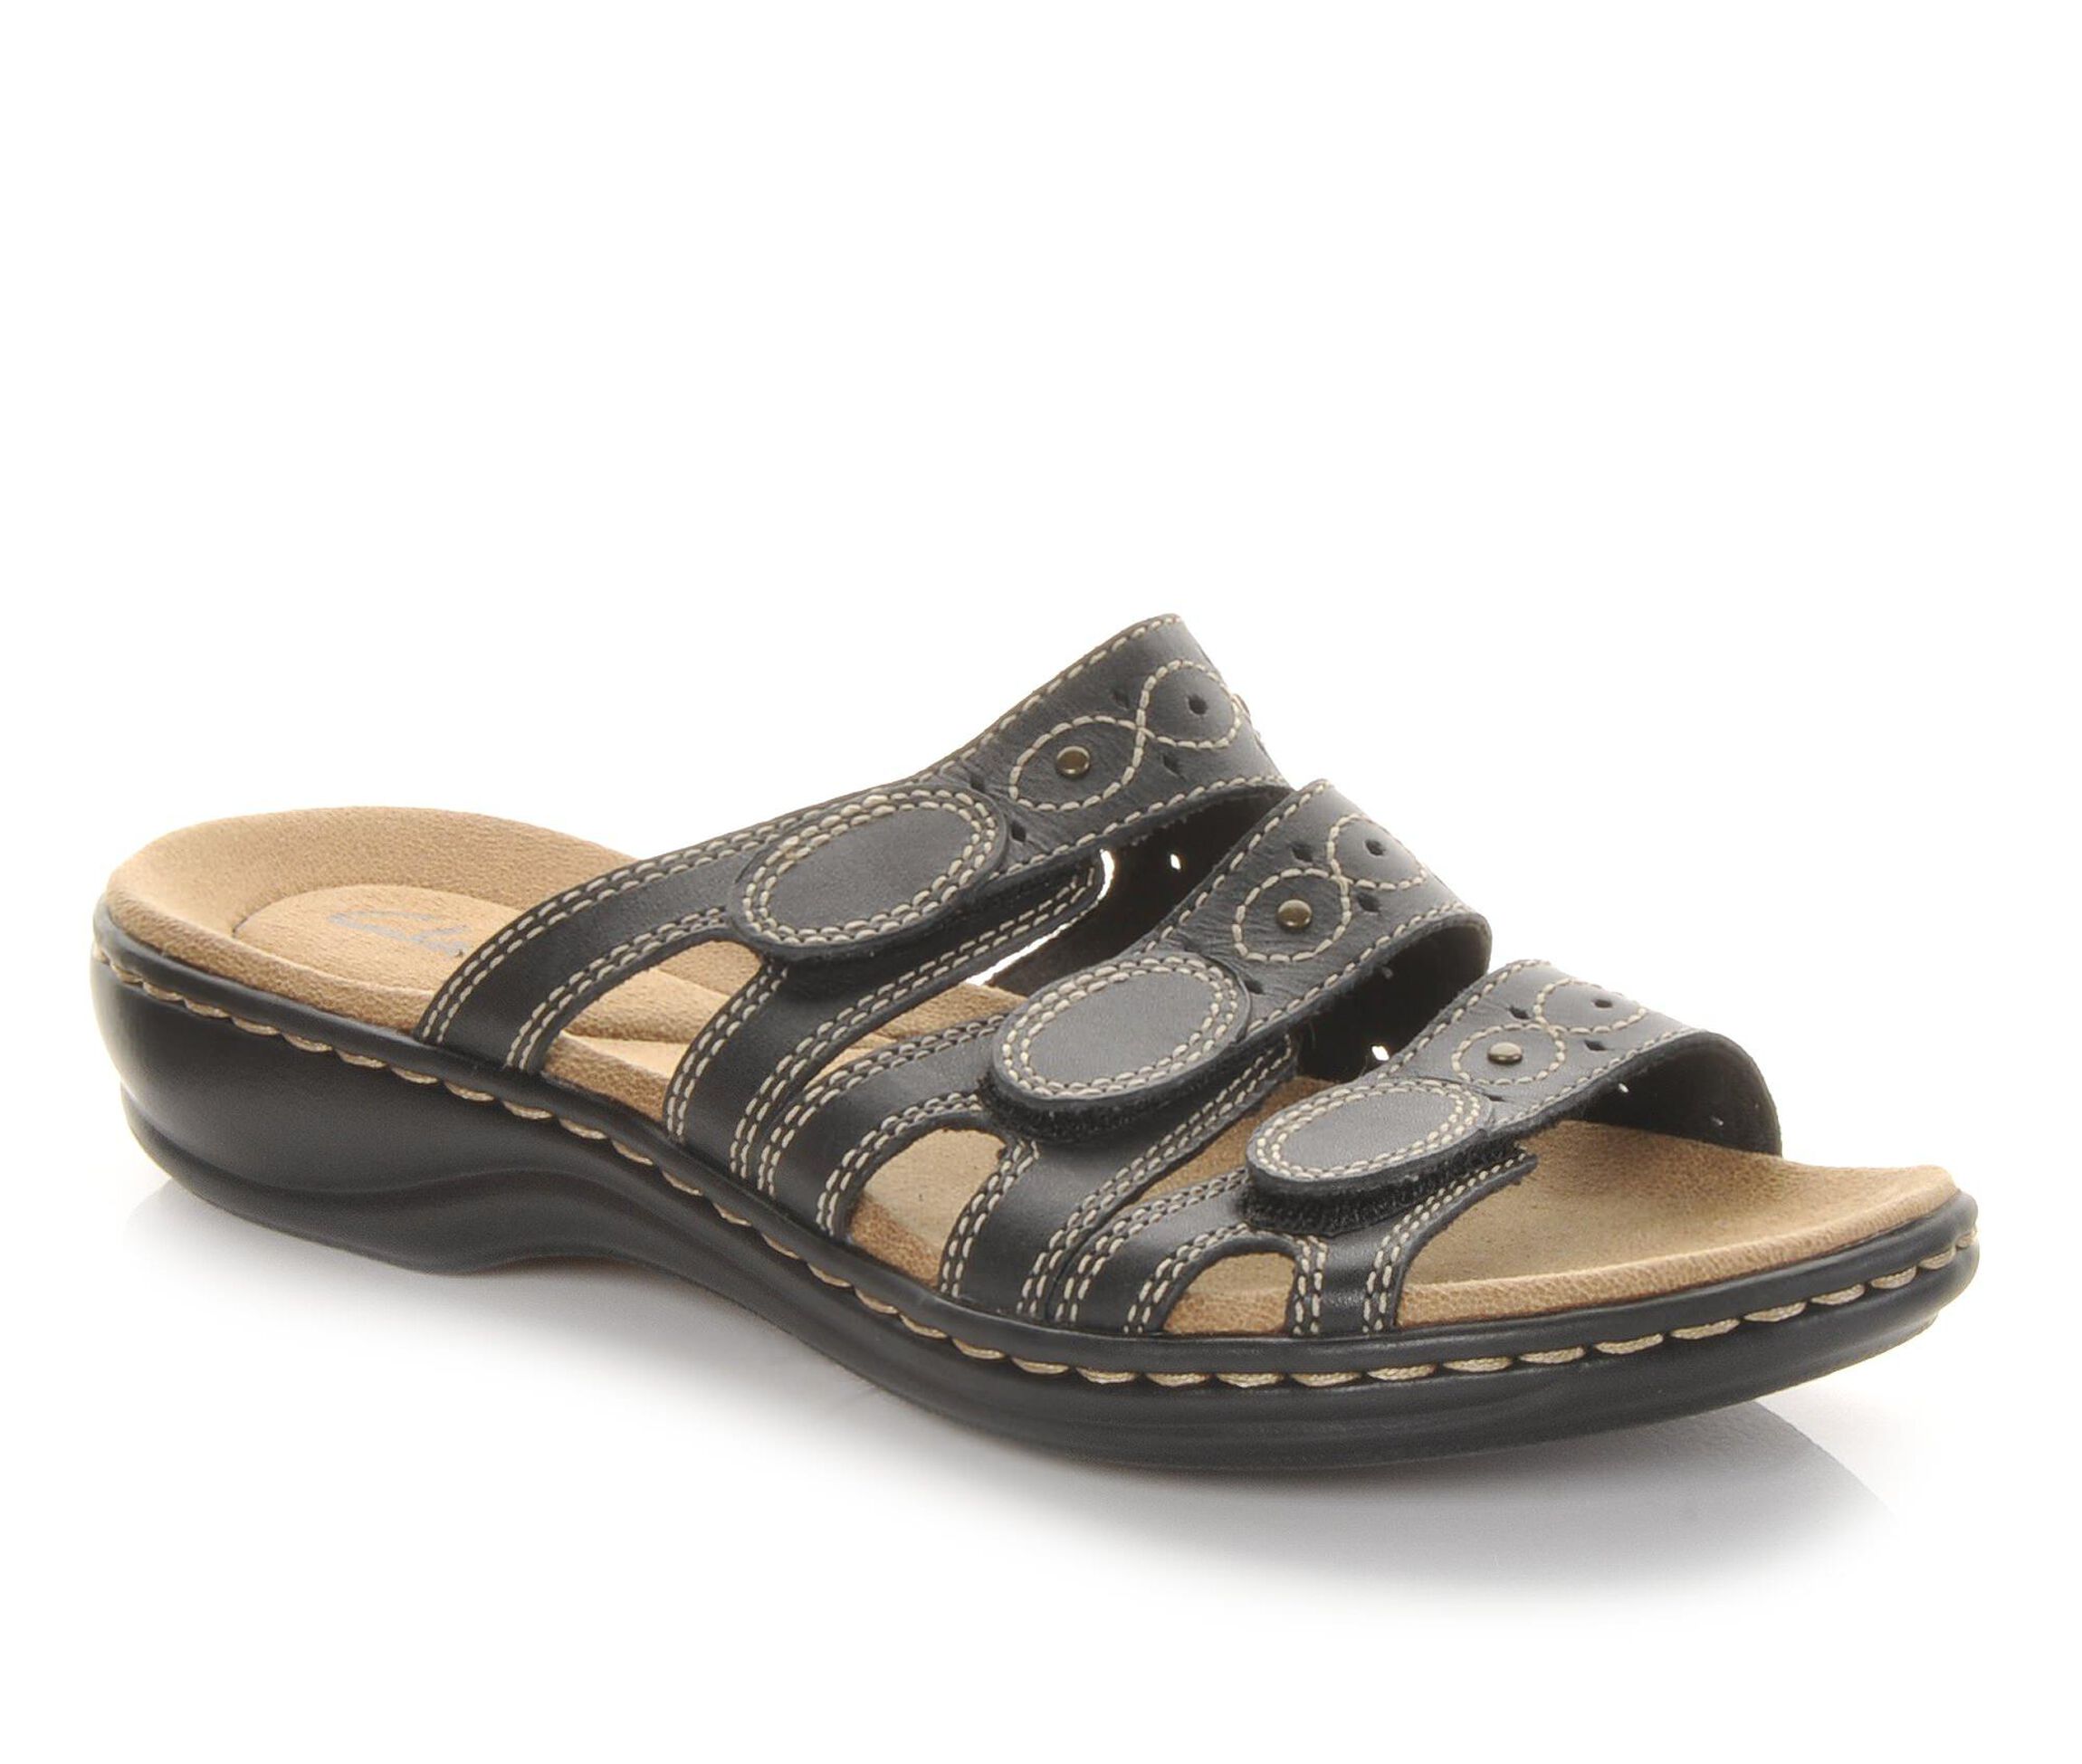 clarks women's leisa cacti slide sandal